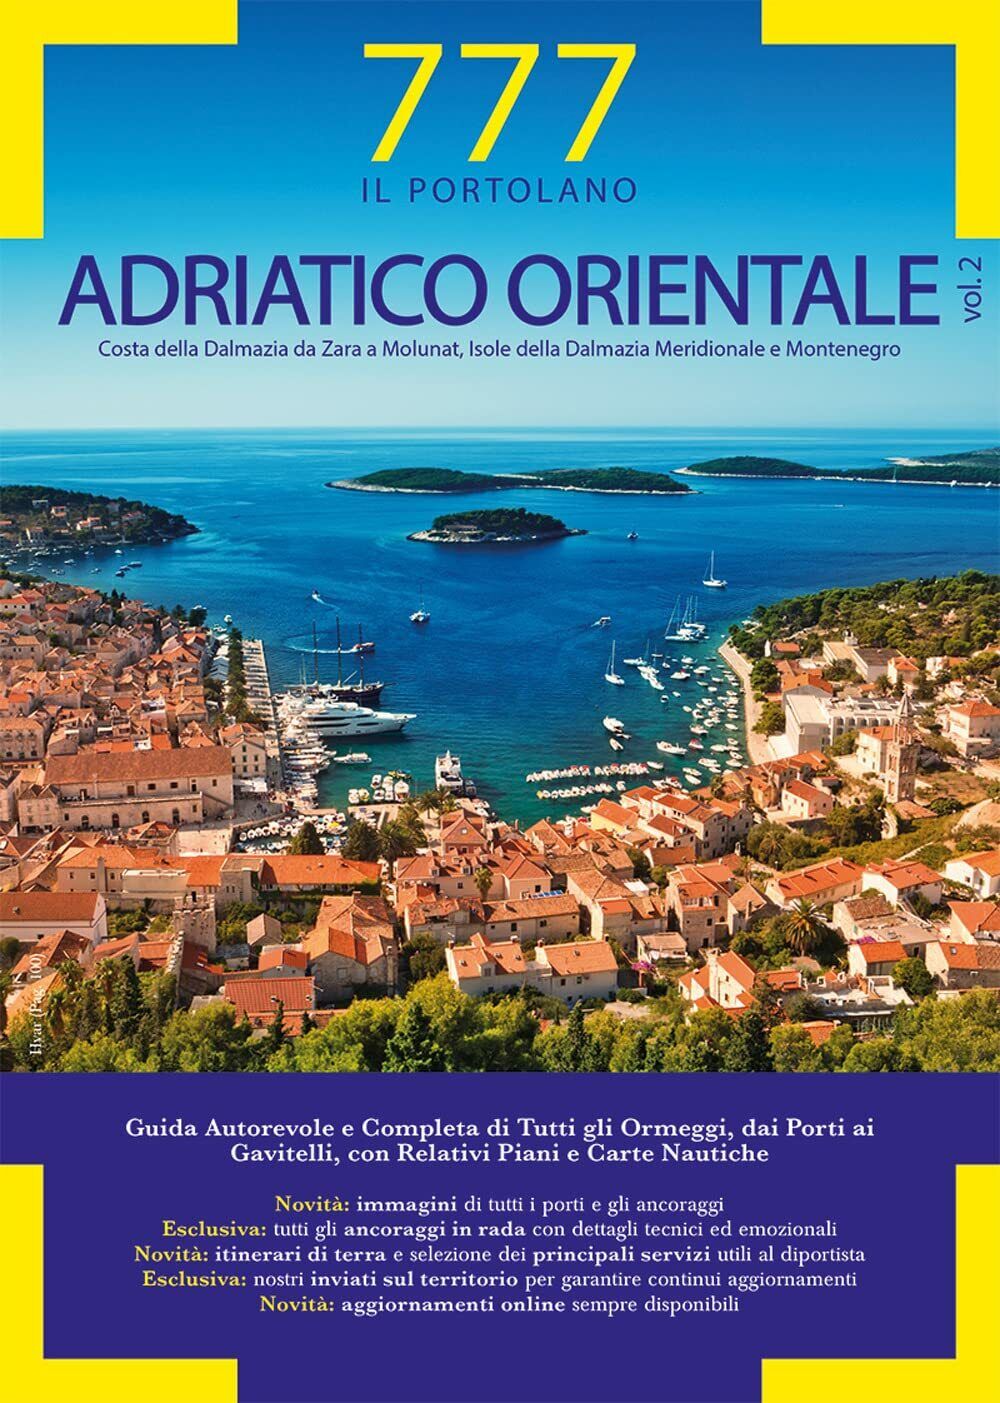 777 Adriatico orientale vol.2 - Silvestro,Sbrizzi, Magnabosco - Magnamare, 2022 